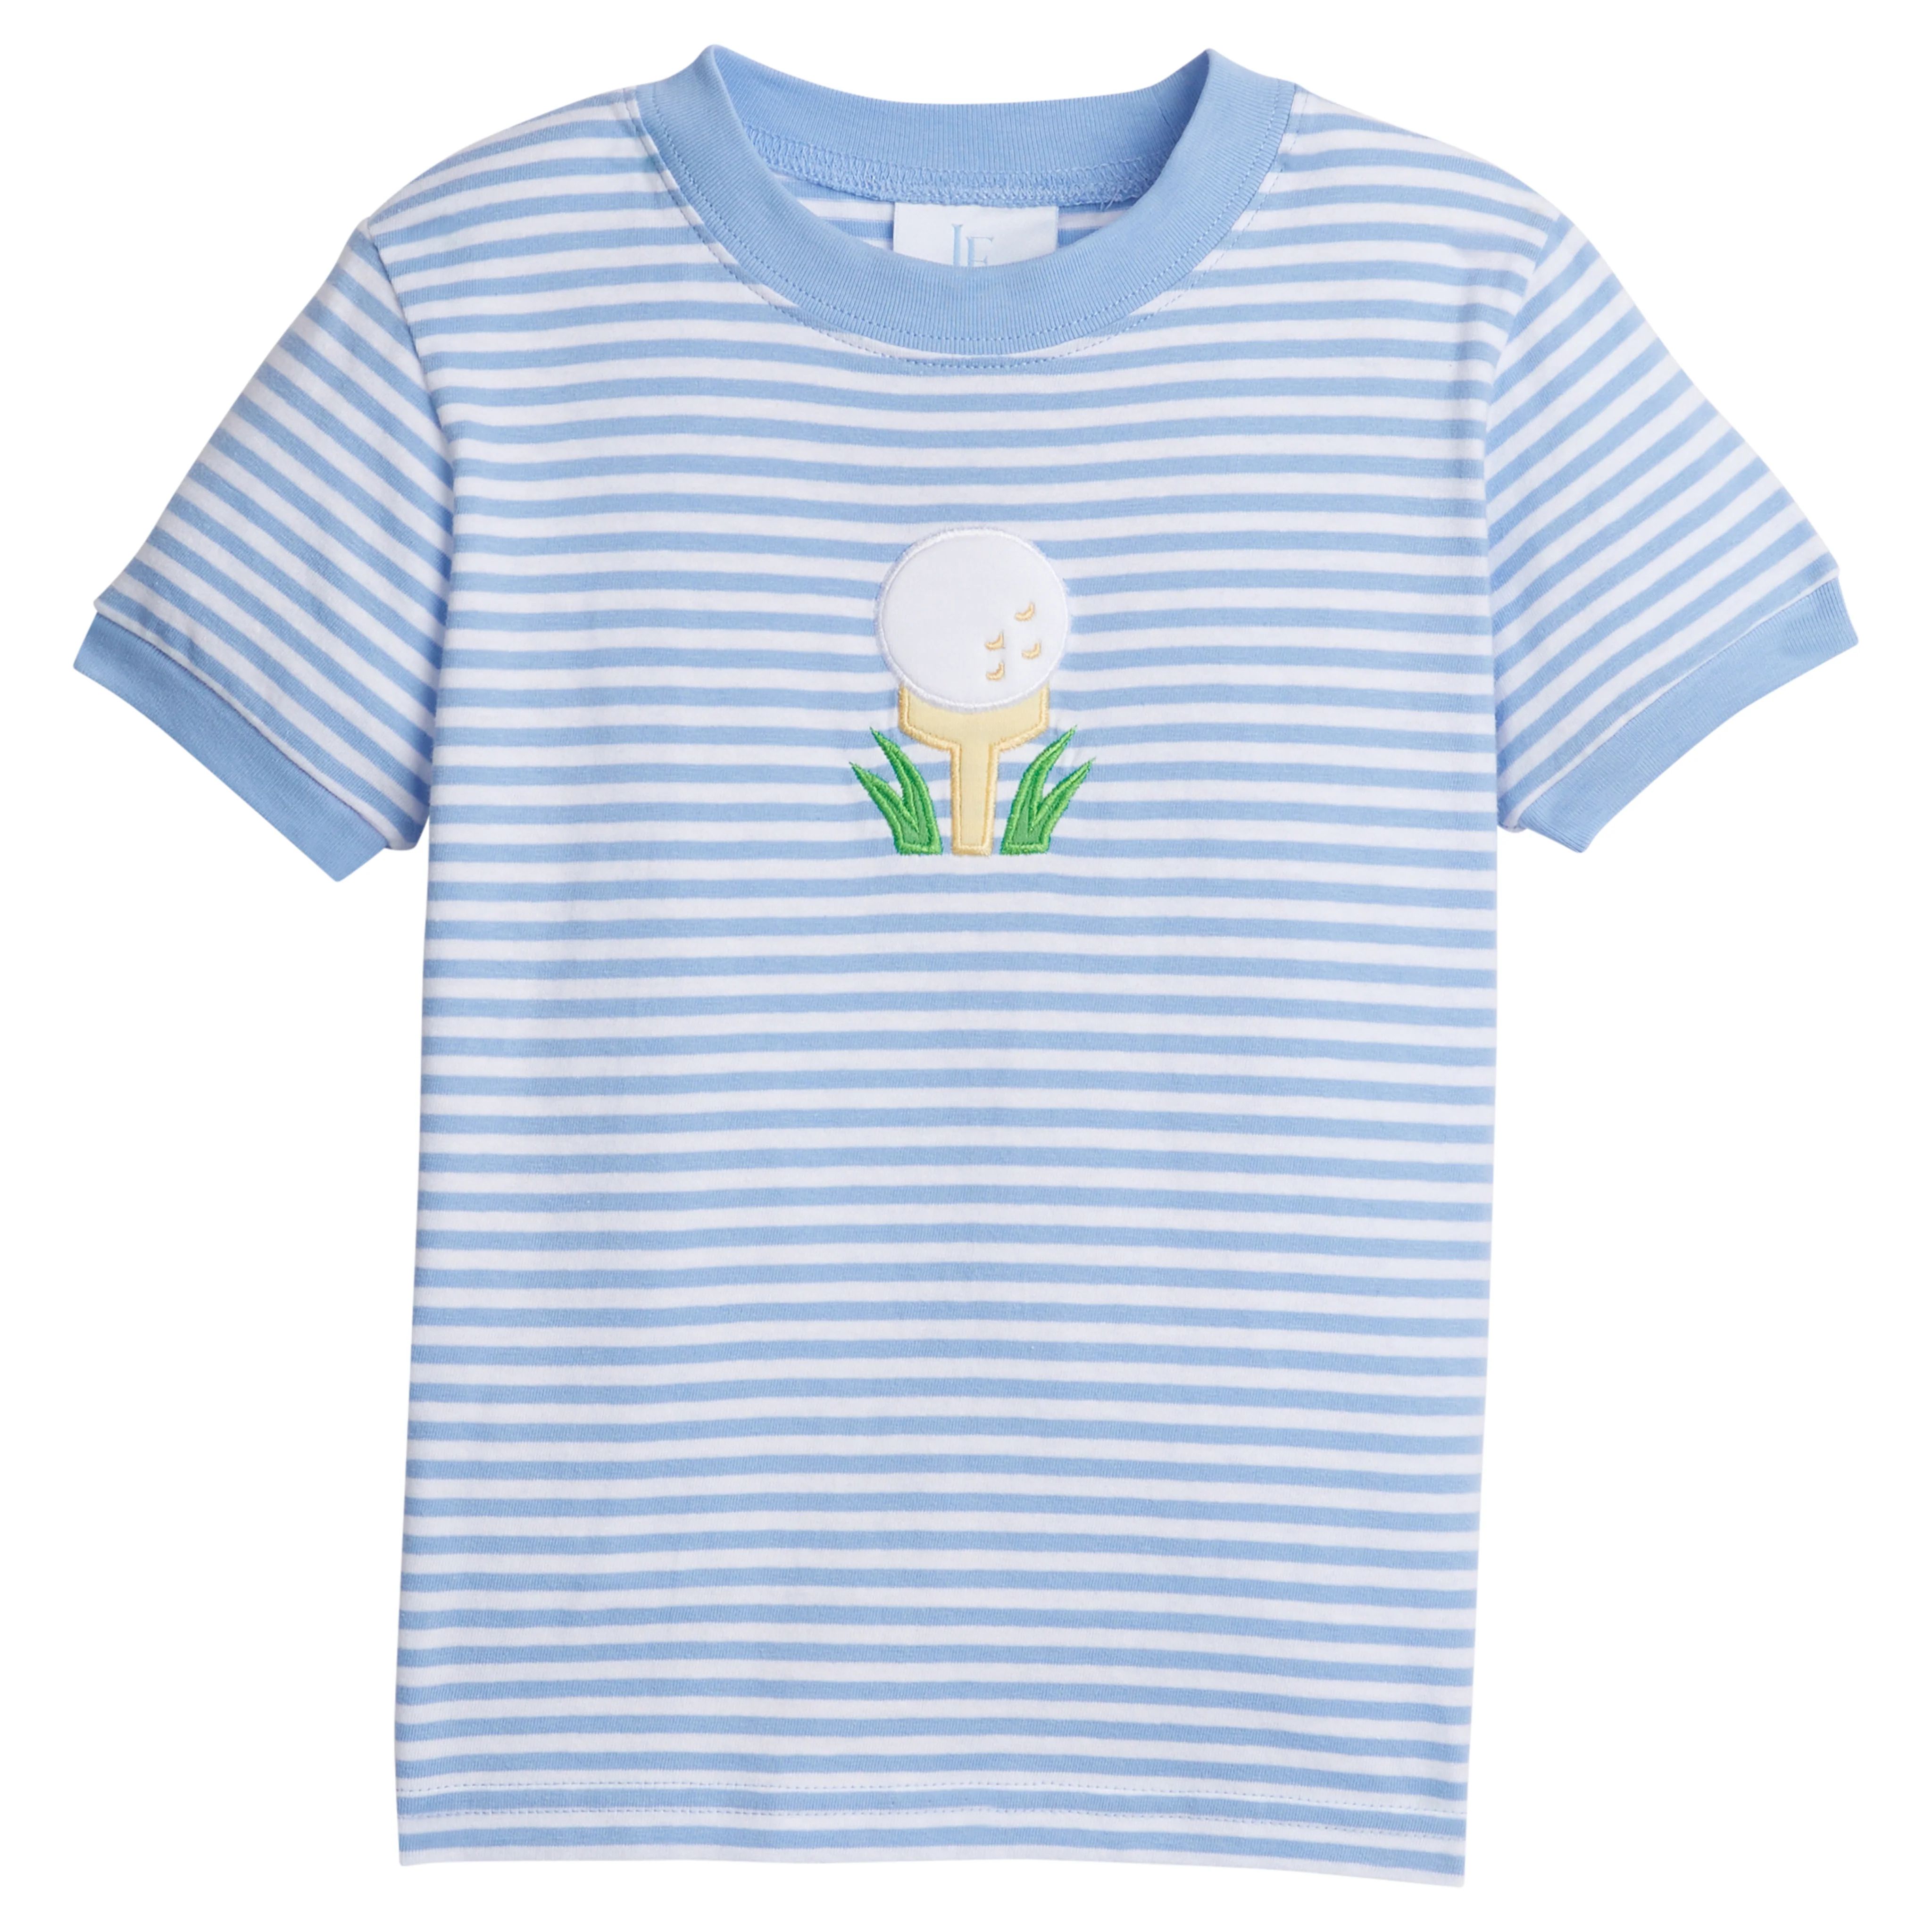 Applique T-Shirt - Golf Tee | Little English